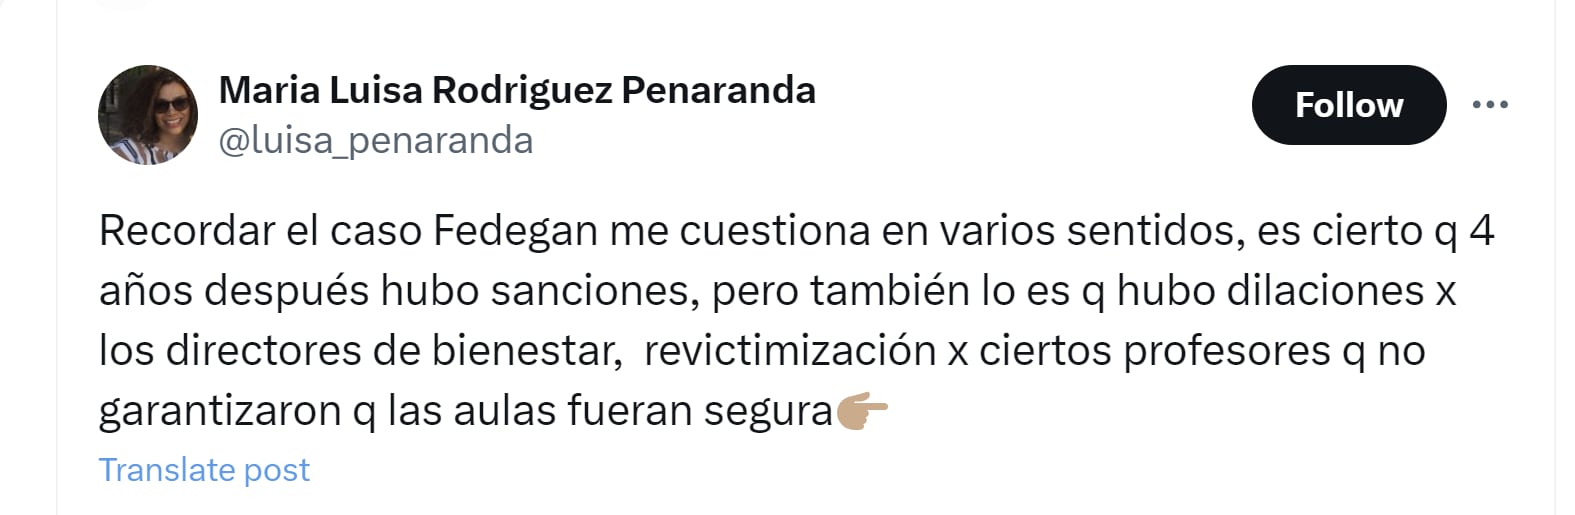 La docente María Luisa Rodríguez Peñaranda cuestionó las acciones de la Universidad Nacional en el caso Fedegán - crédito @luisa_penaranda/X